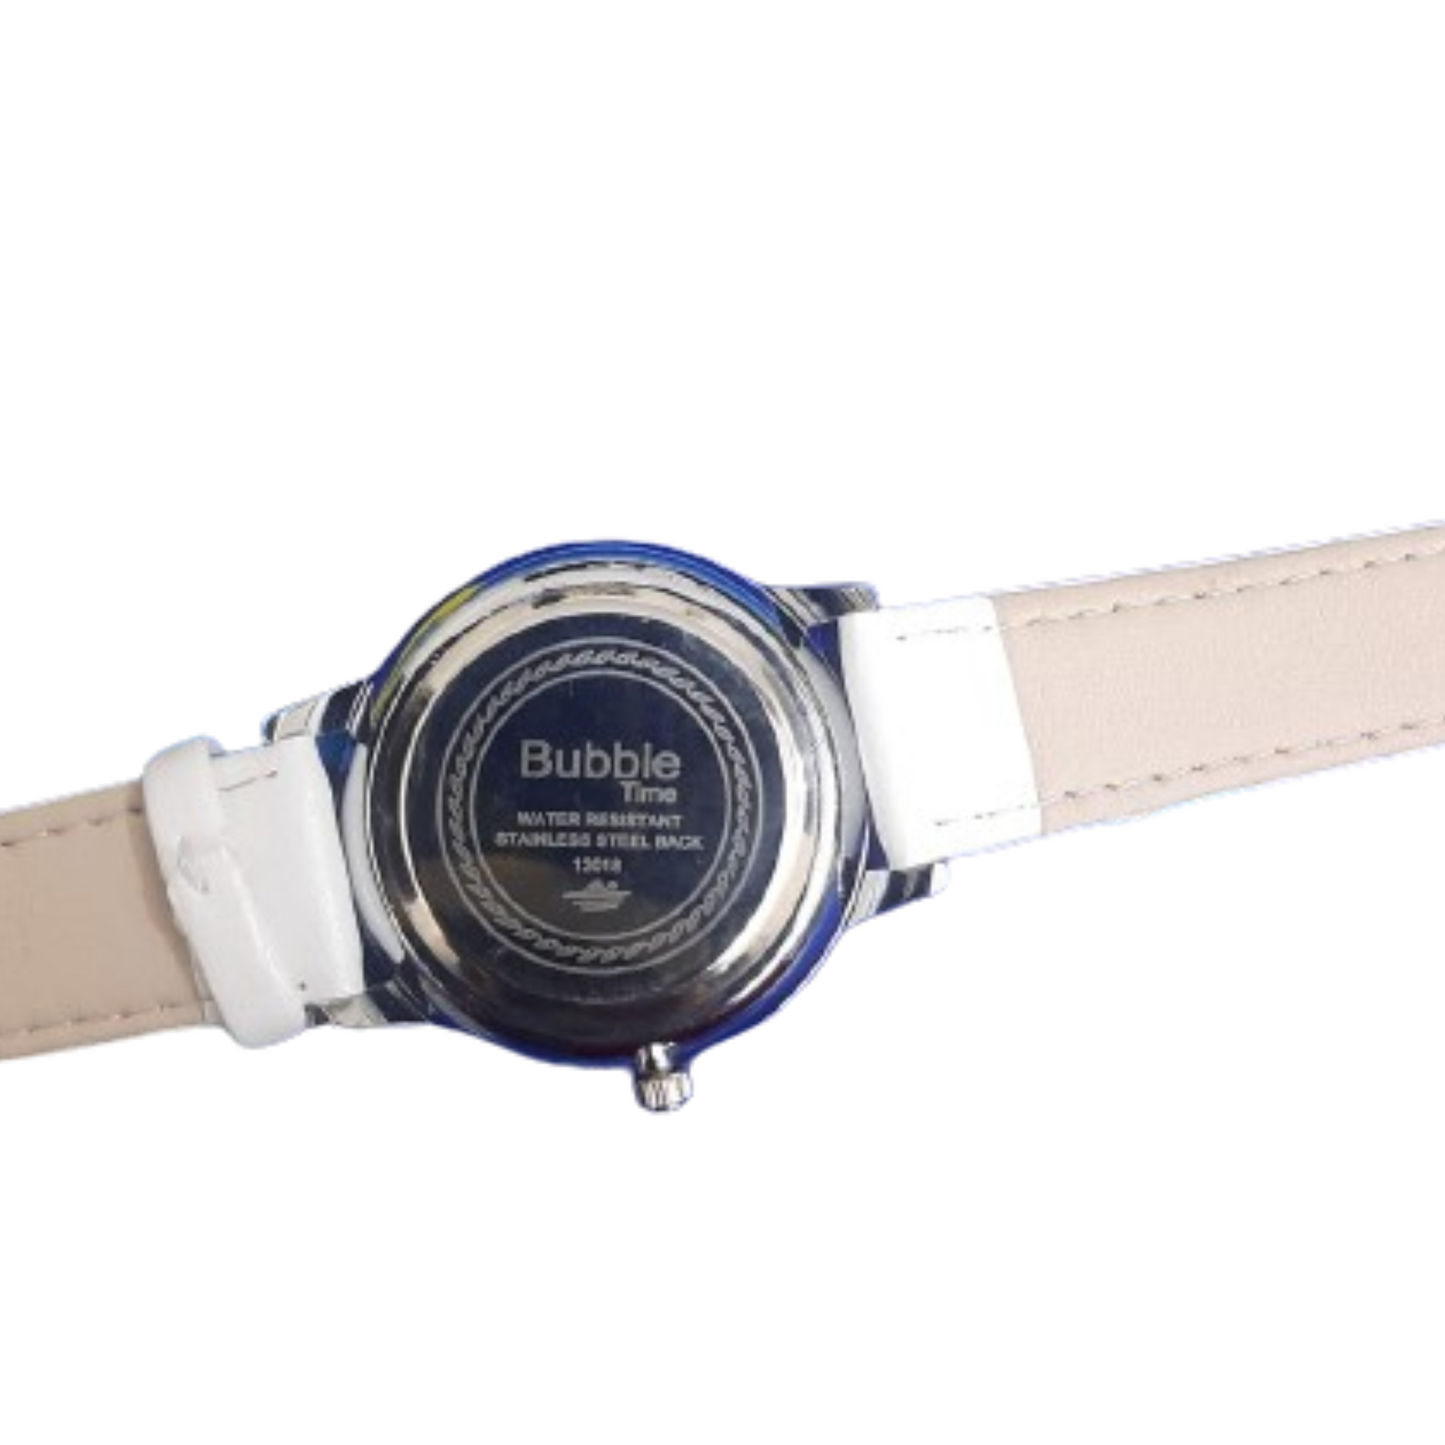 White Bubble Time women's wristwatch